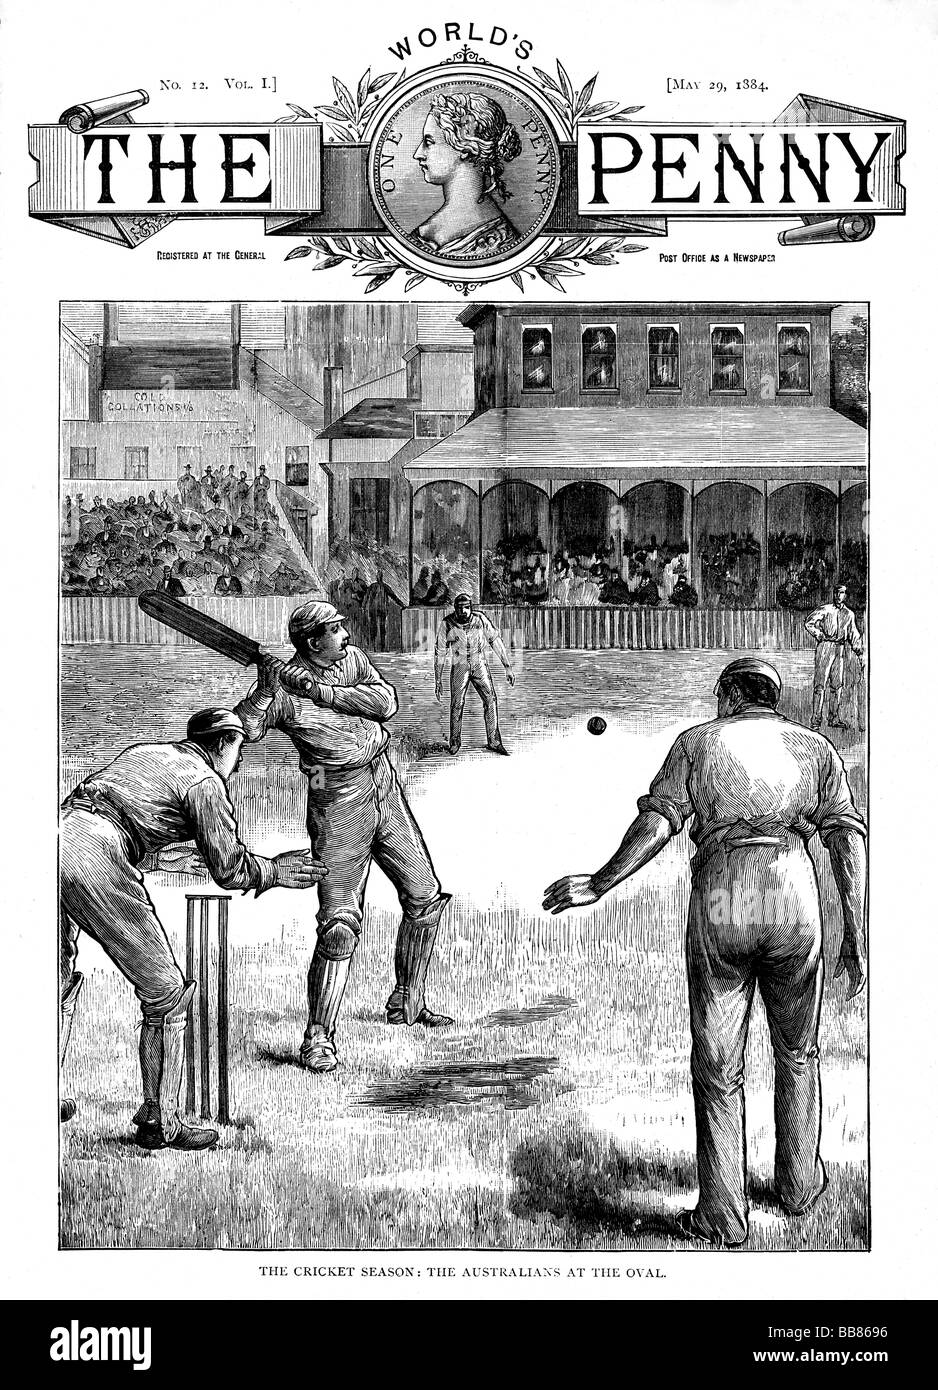 En el óvalo de Australia 1884 la portada de la revista con las cenizas de Australia Touring equipo jugando Surrey en mayo Foto de stock